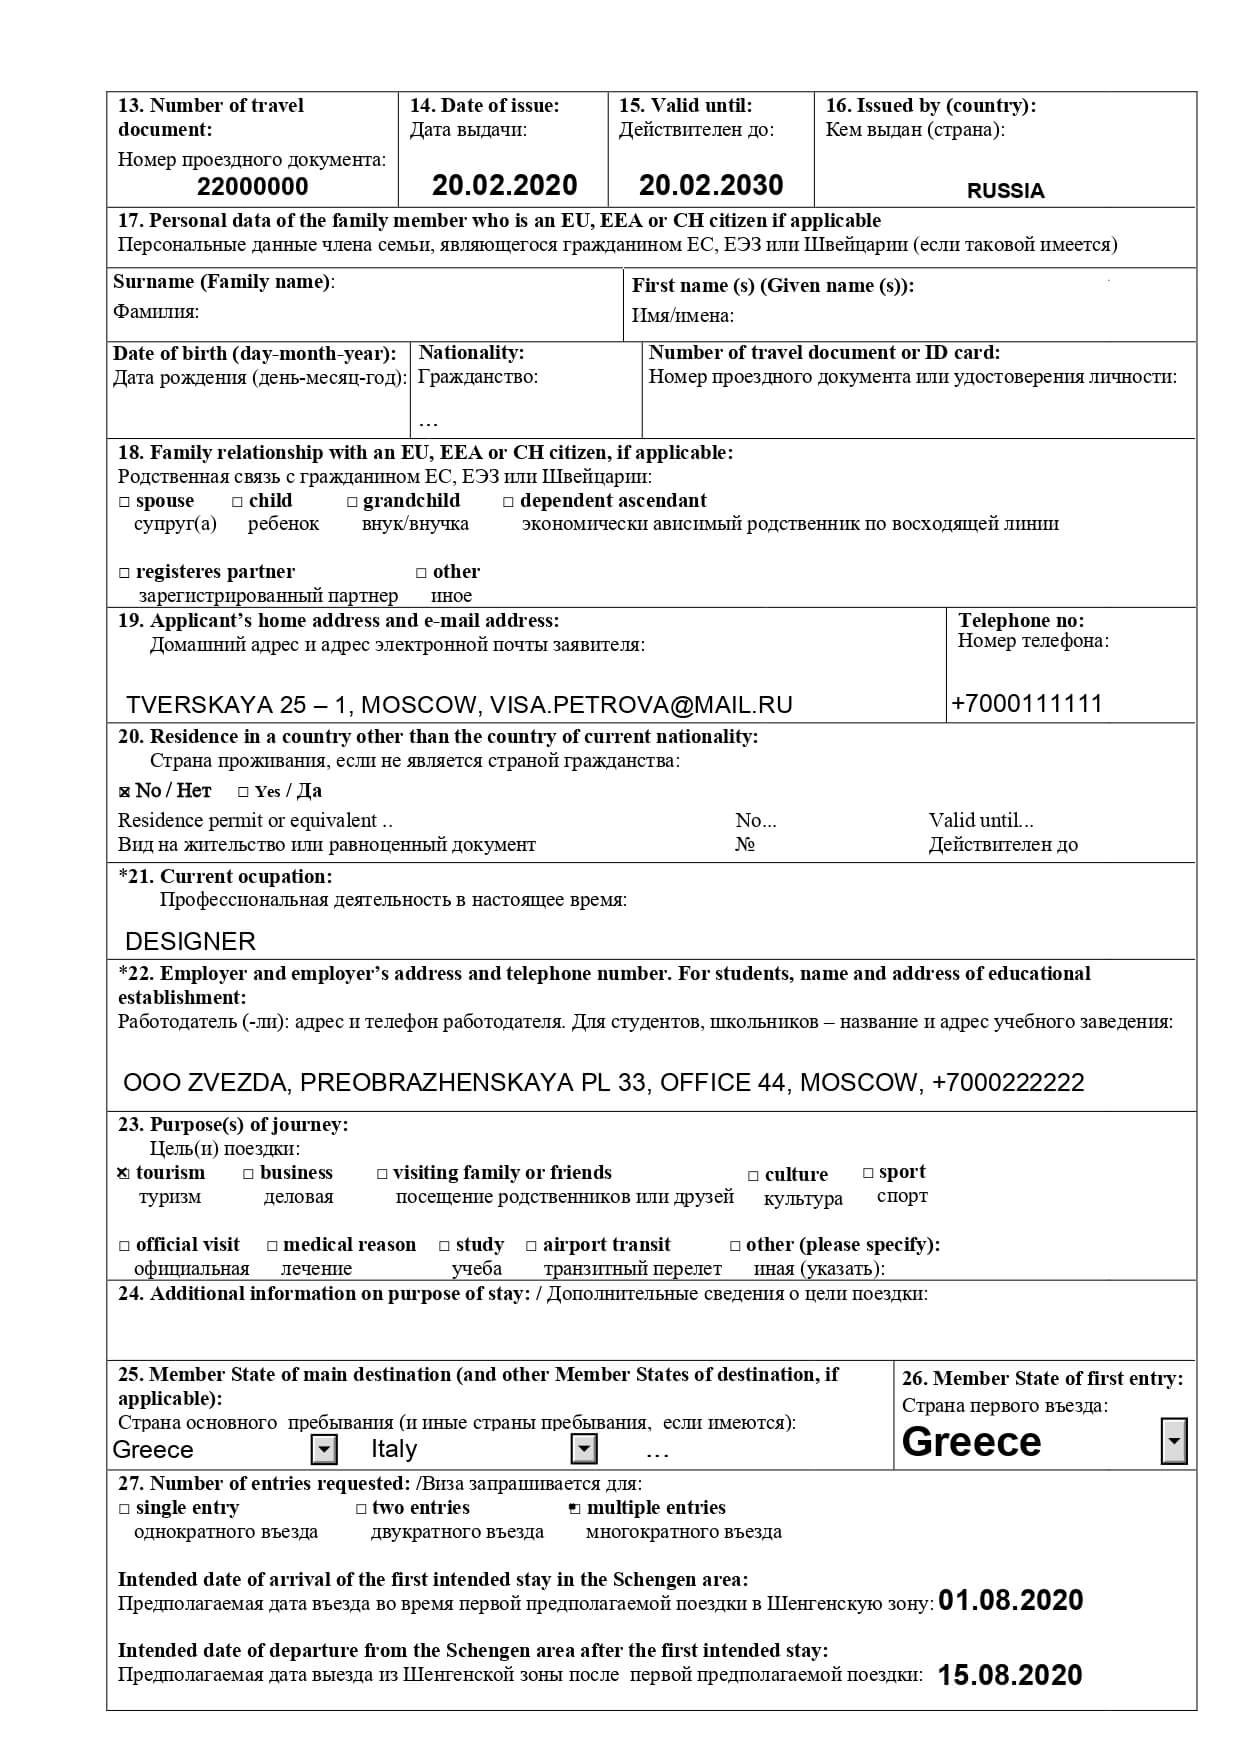 Вторая страница анкеты на визу в Грецию